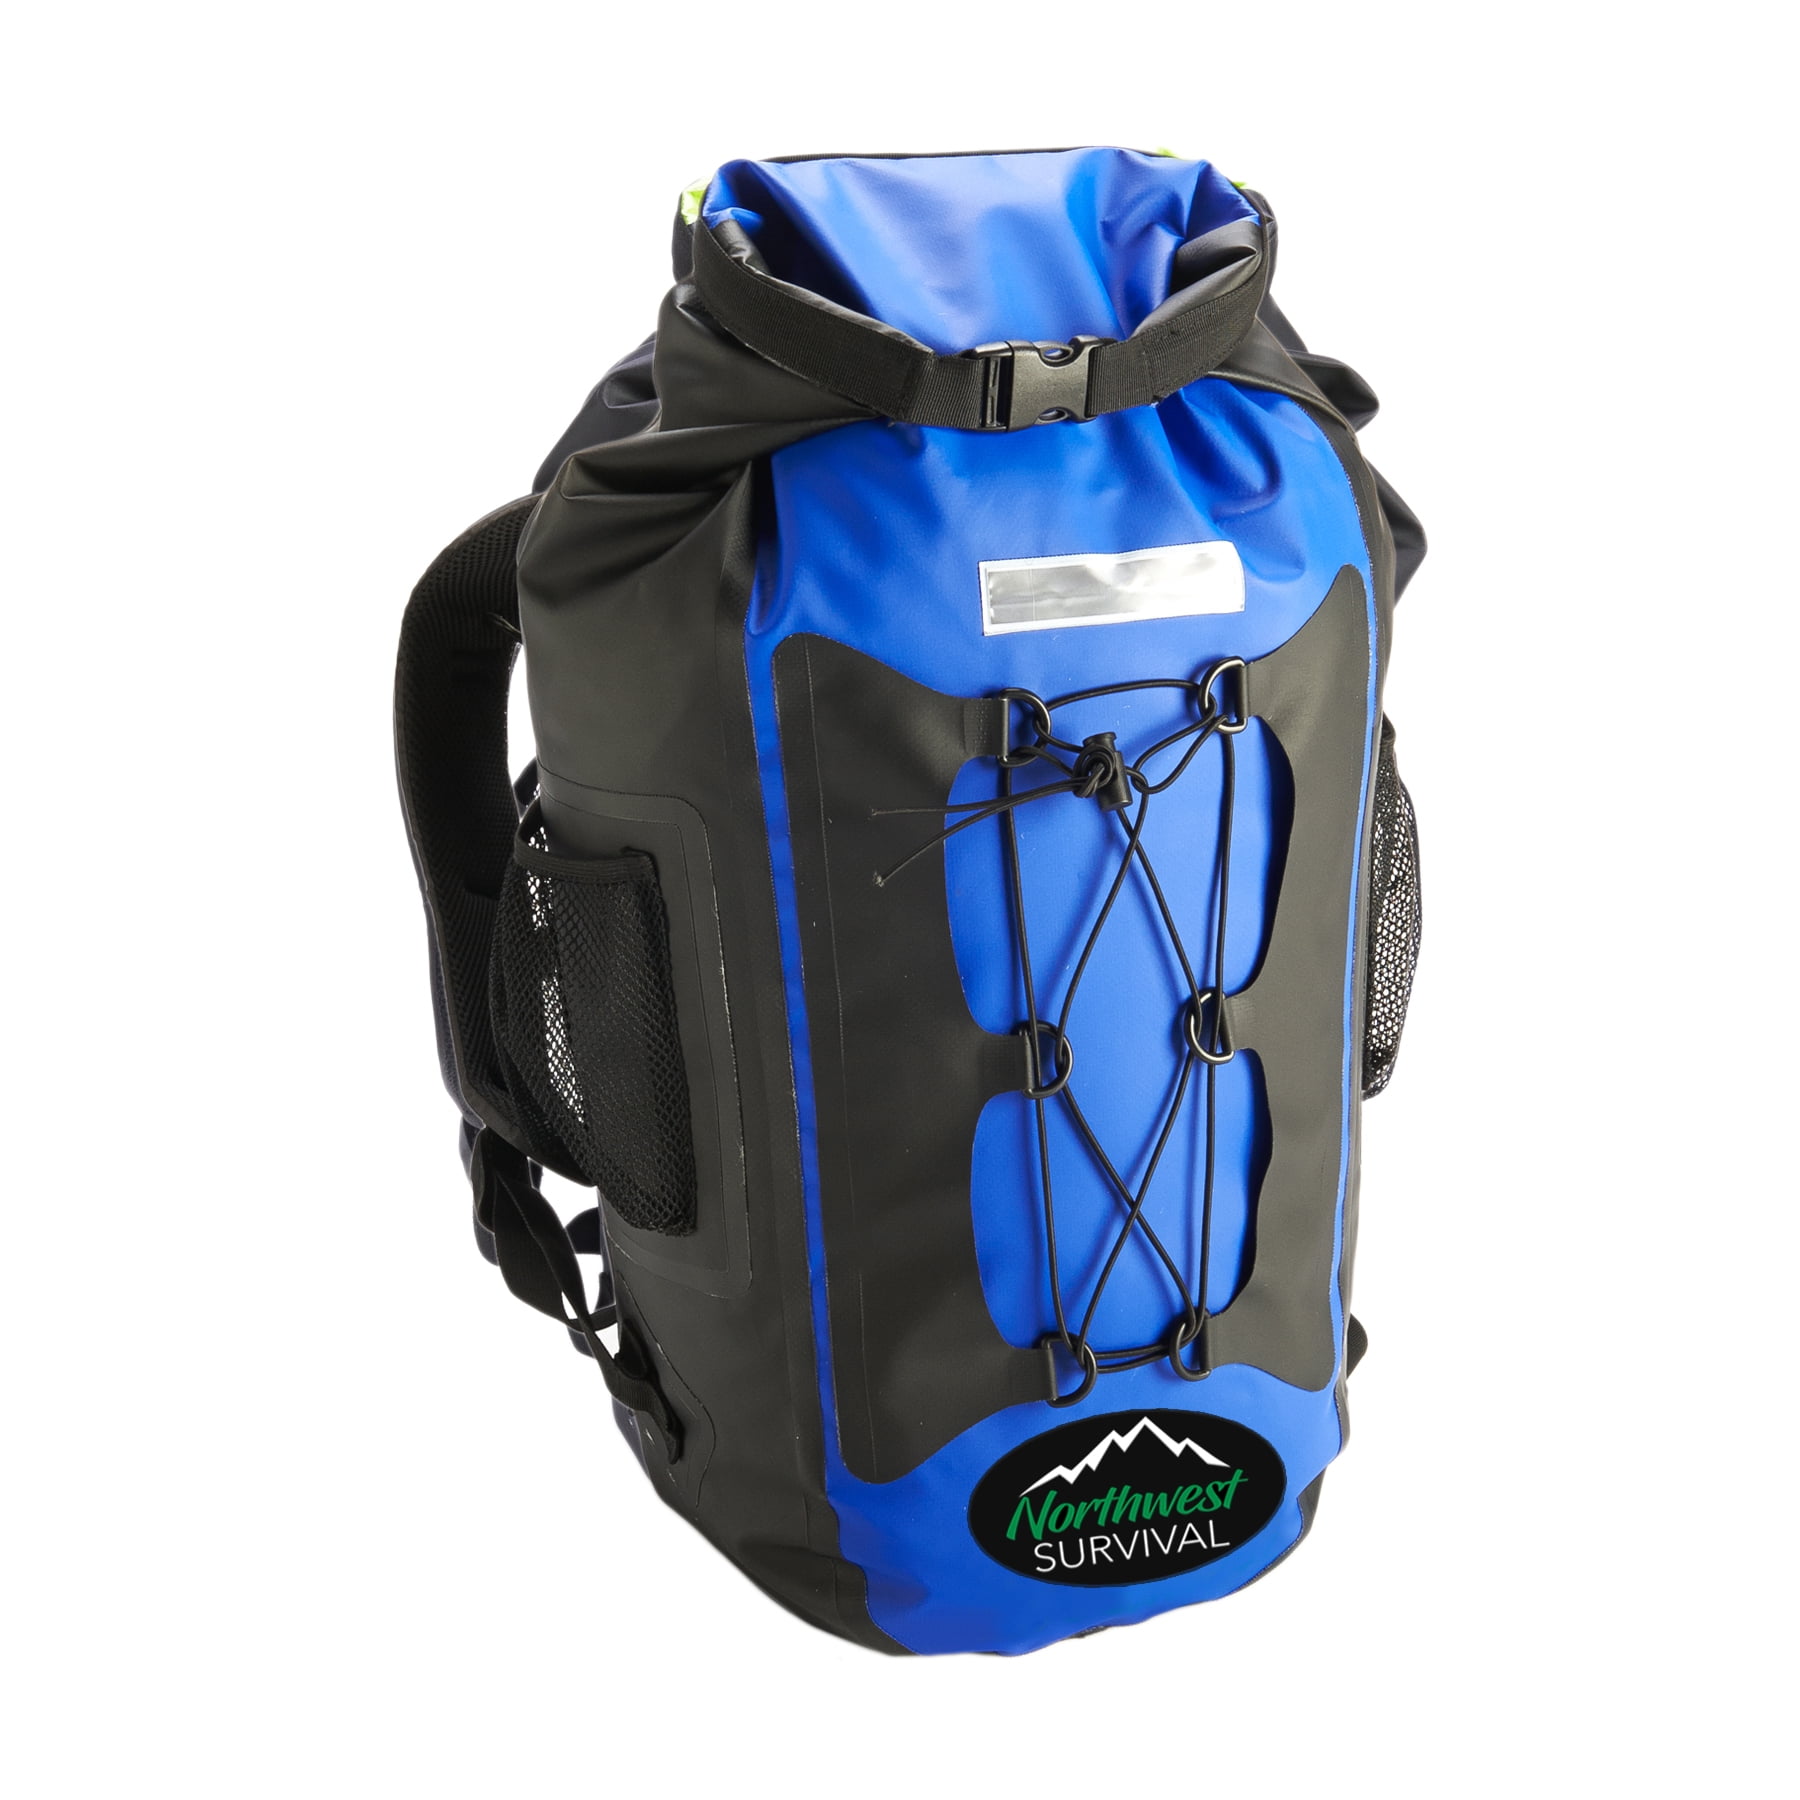 Northwest Survival Waterproof Backpack Blue 